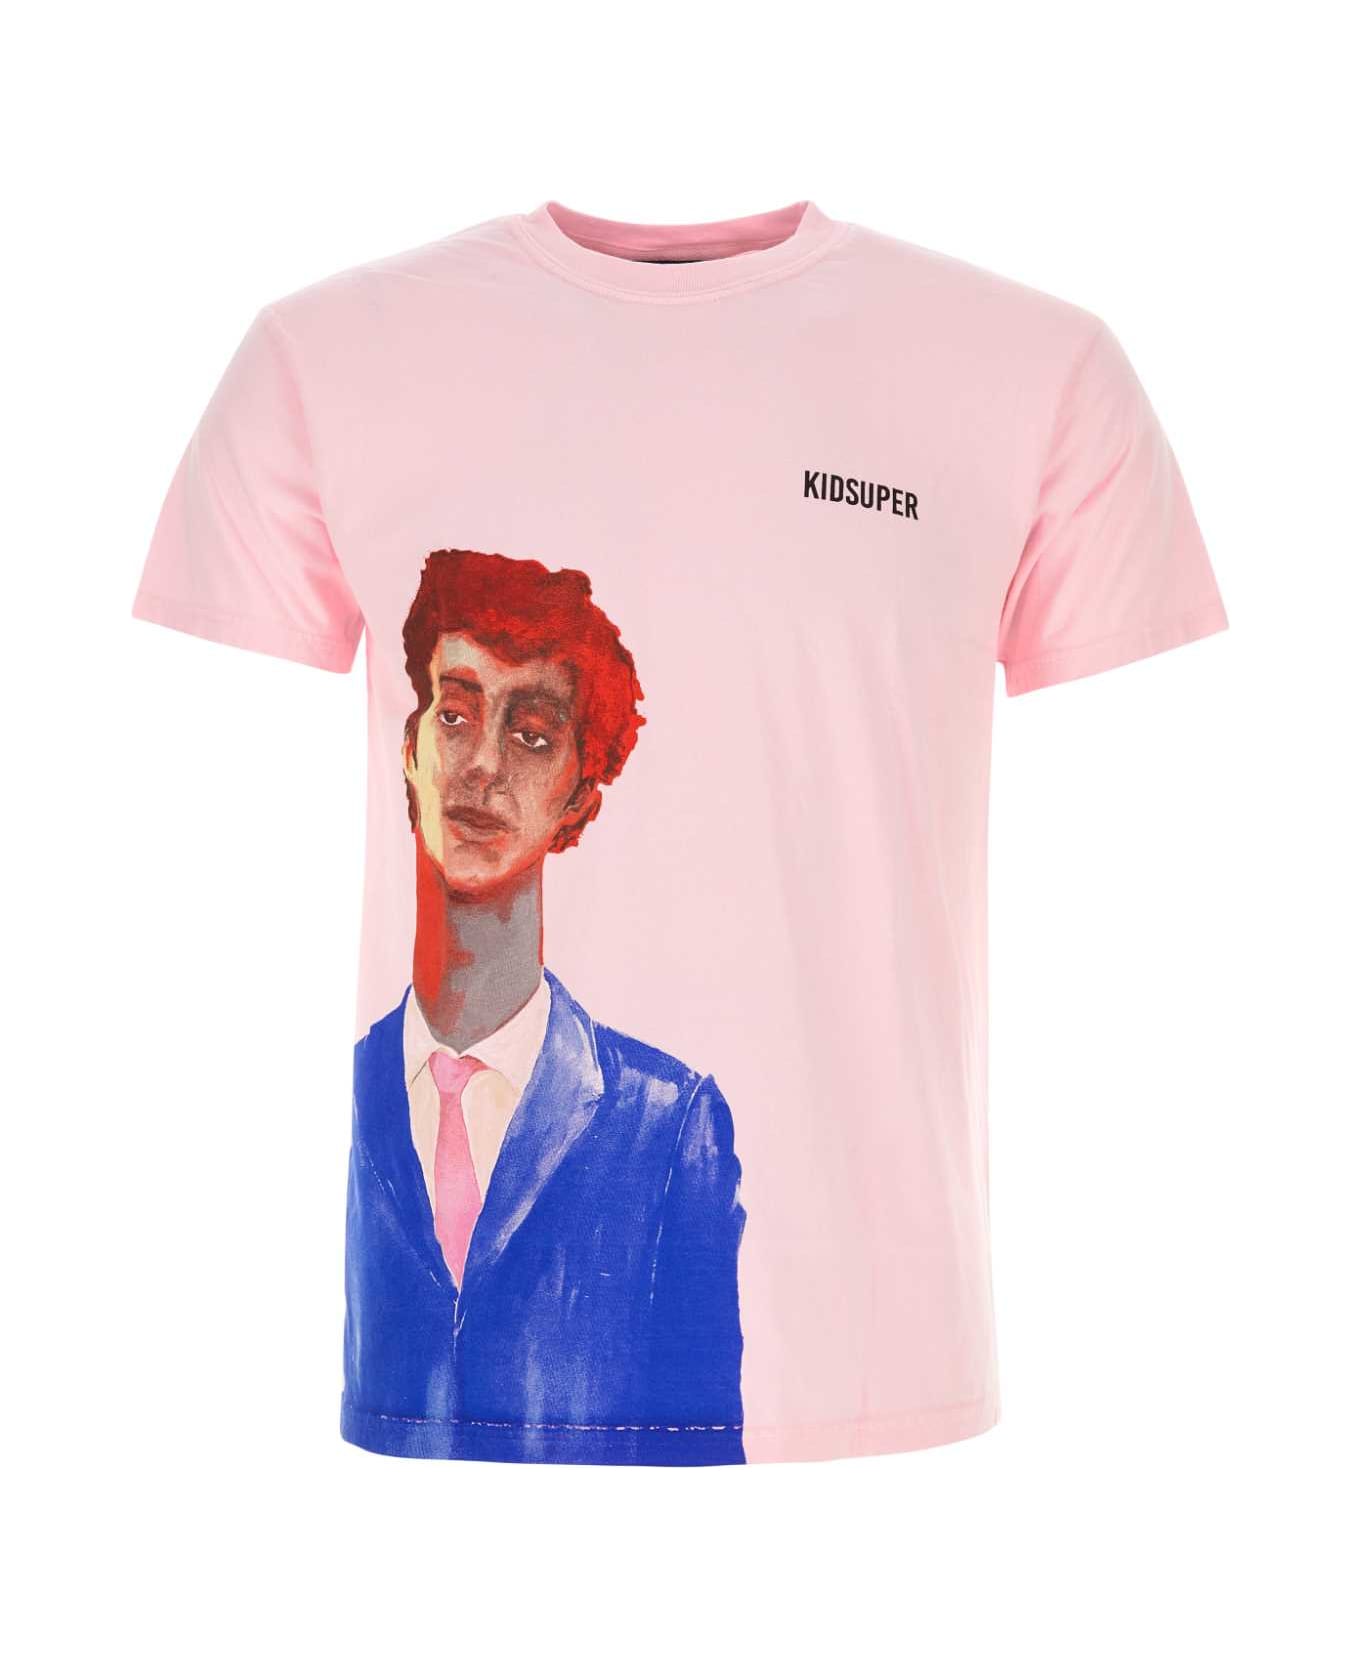 Kidsuper Pink Cotton T-shirt - ABOYPINK